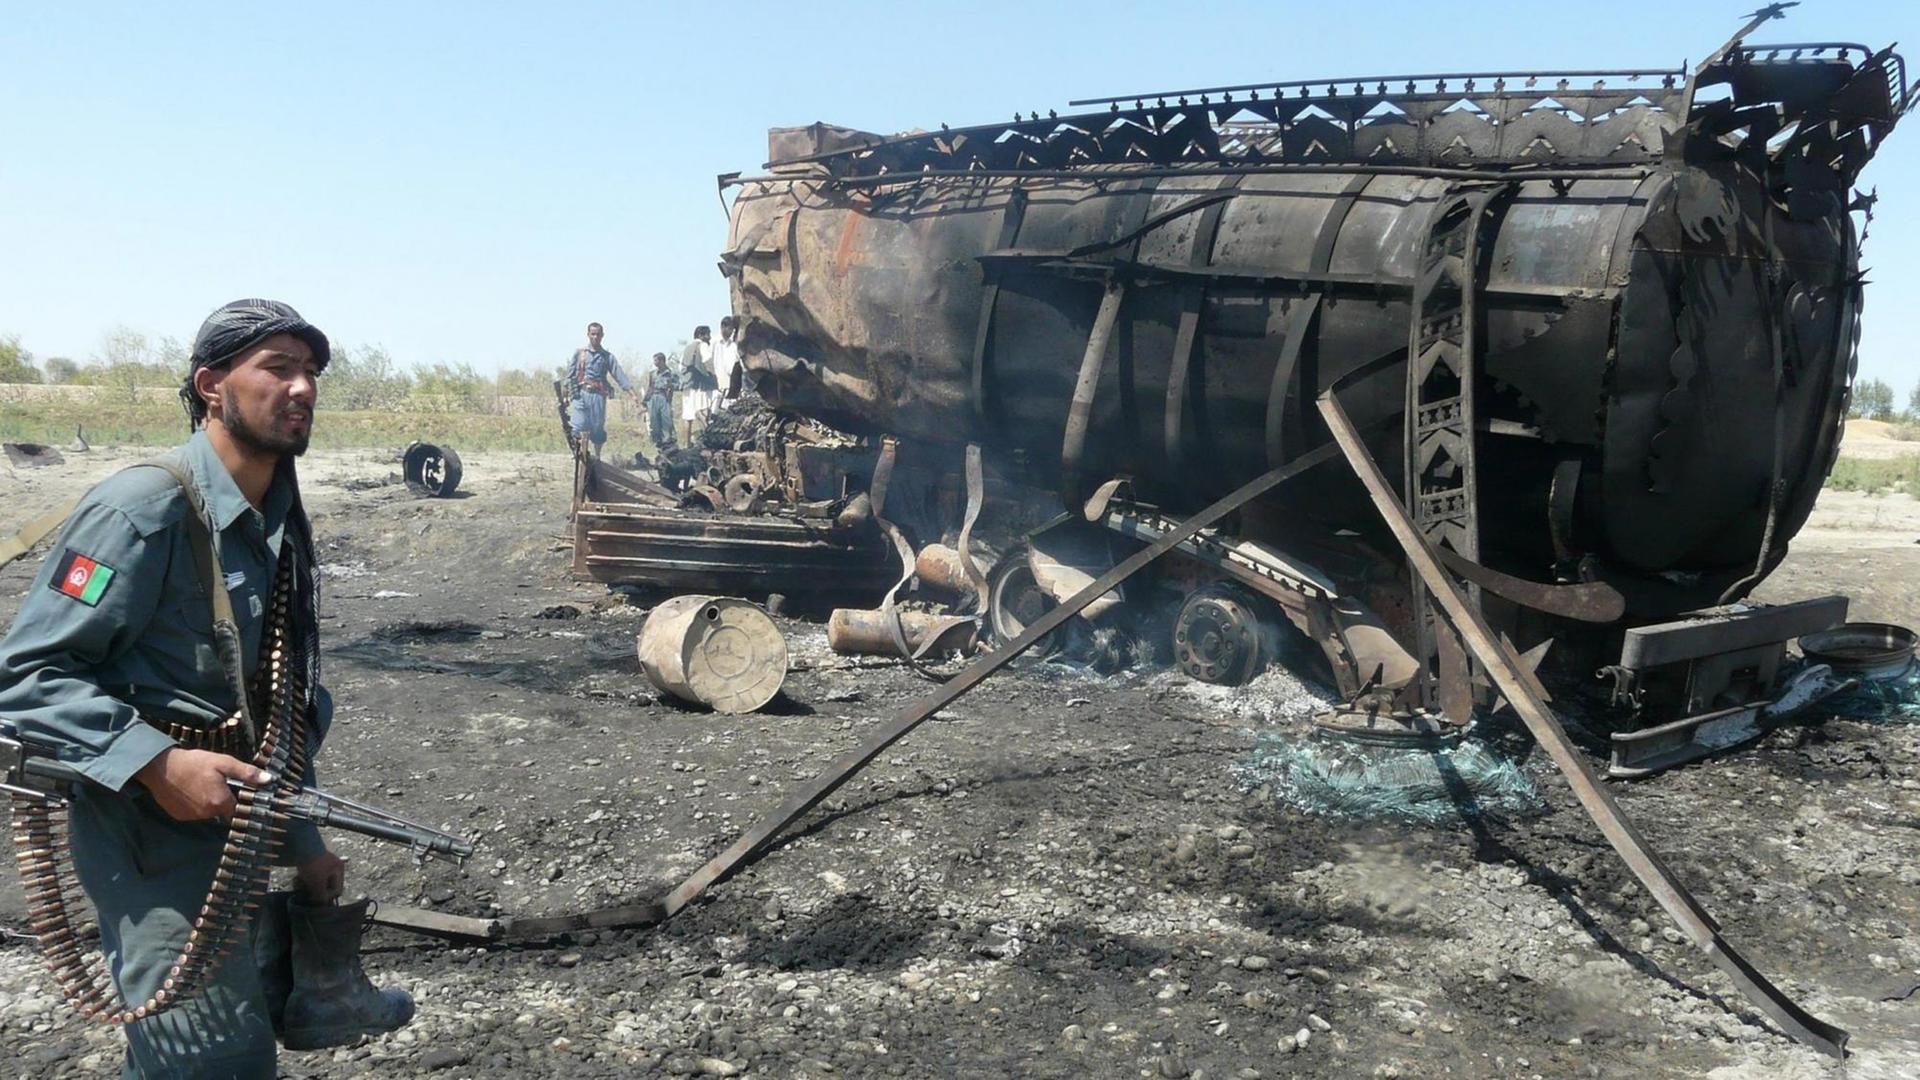 Die afghanische Polizei inspiziert die verbrannten Öltanker am Ort, eines von der NATO geführten Luftangriffs gegen Taliban-Kämpfer in Kunduz (Nordafghanistan), mindestens 50 Menschen wurden dabei getötet